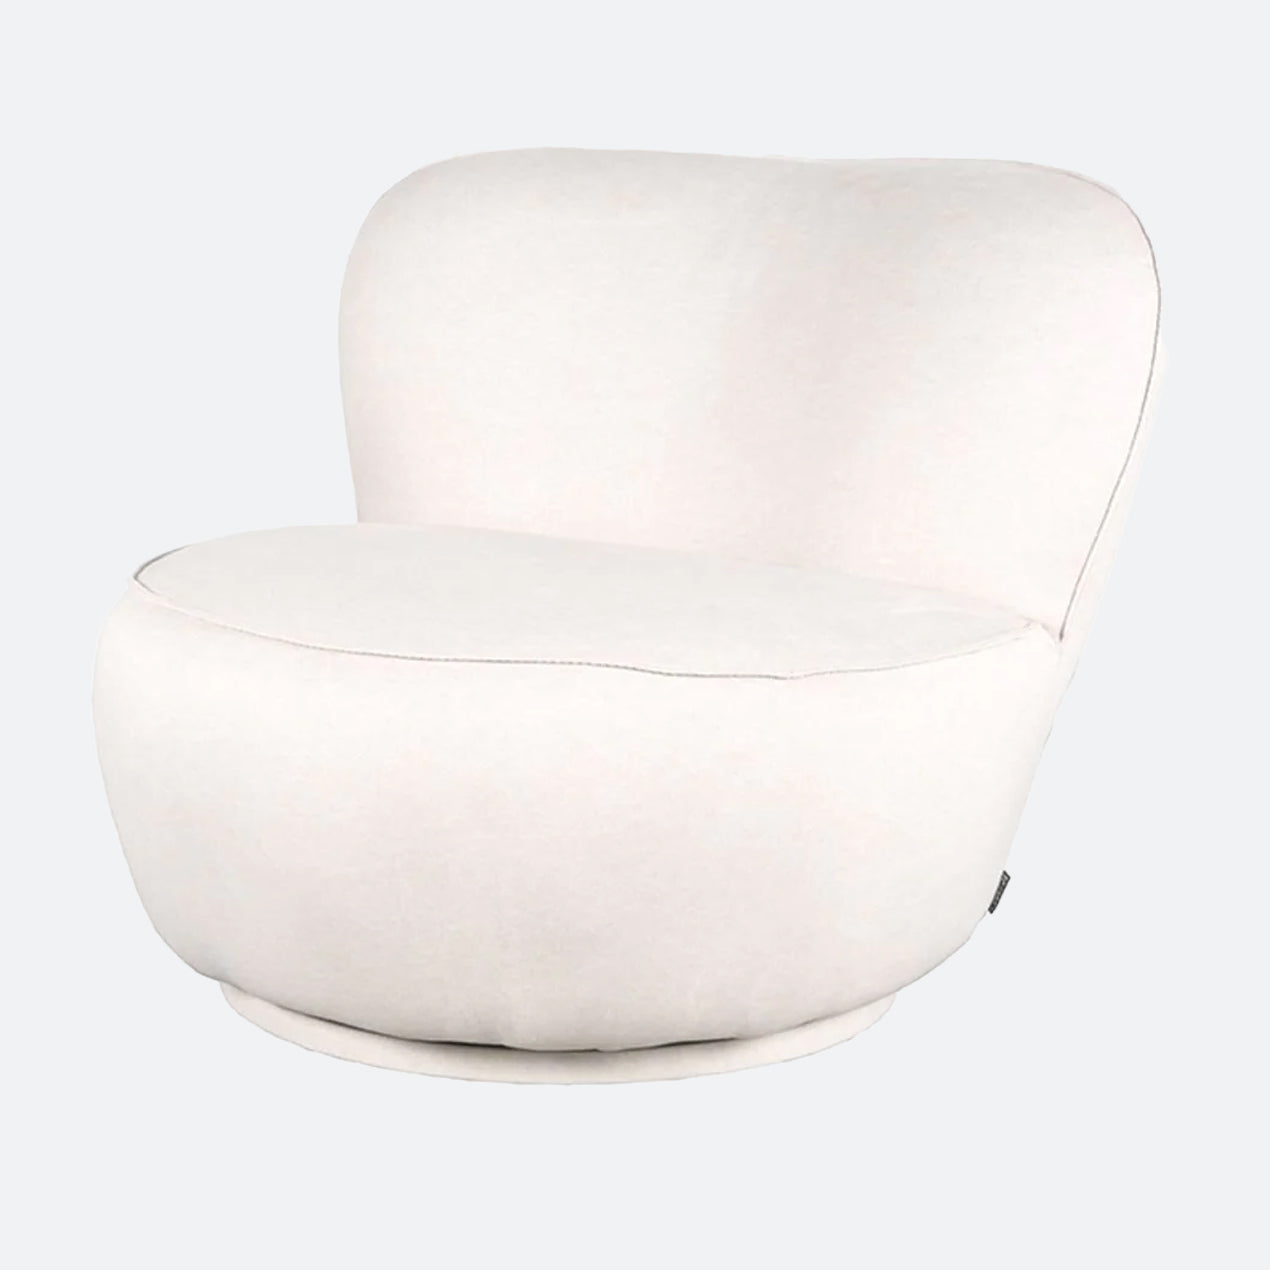 Een mooie witte fauteuil van meubelbaas. Een fauteuil wit past mooi binnen verschillende woonstijlen en interieurs en zorgt voor een strakke uitstraling.